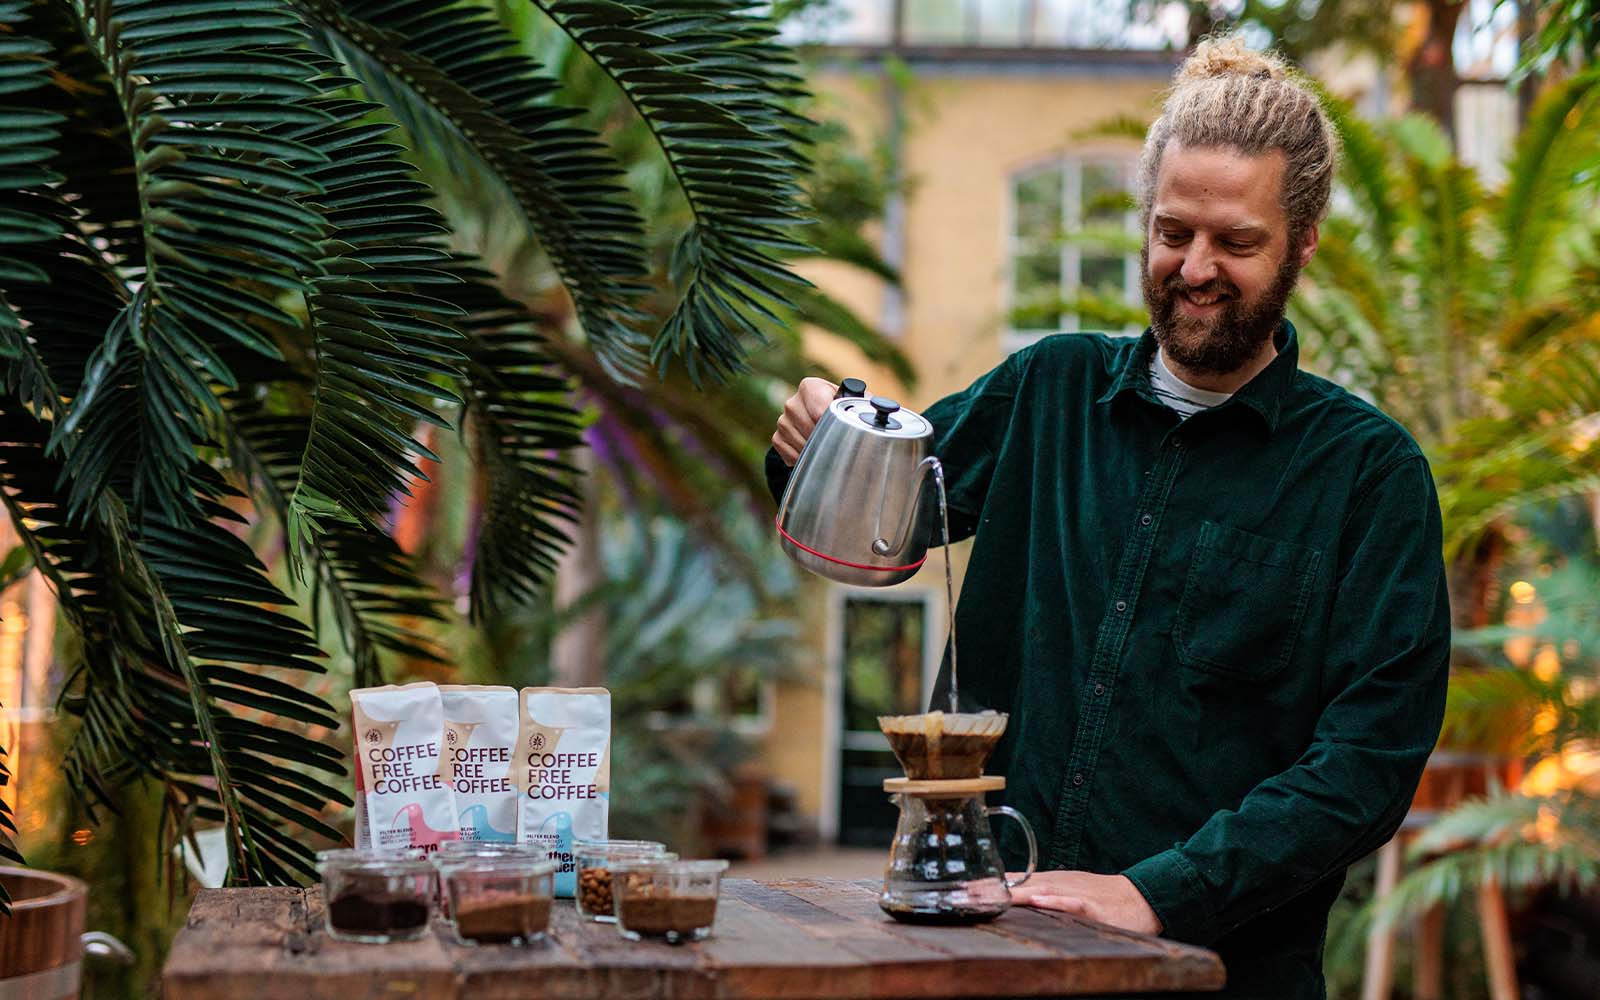 Northern Wonder lanceert Koffie zonder koffiebonen